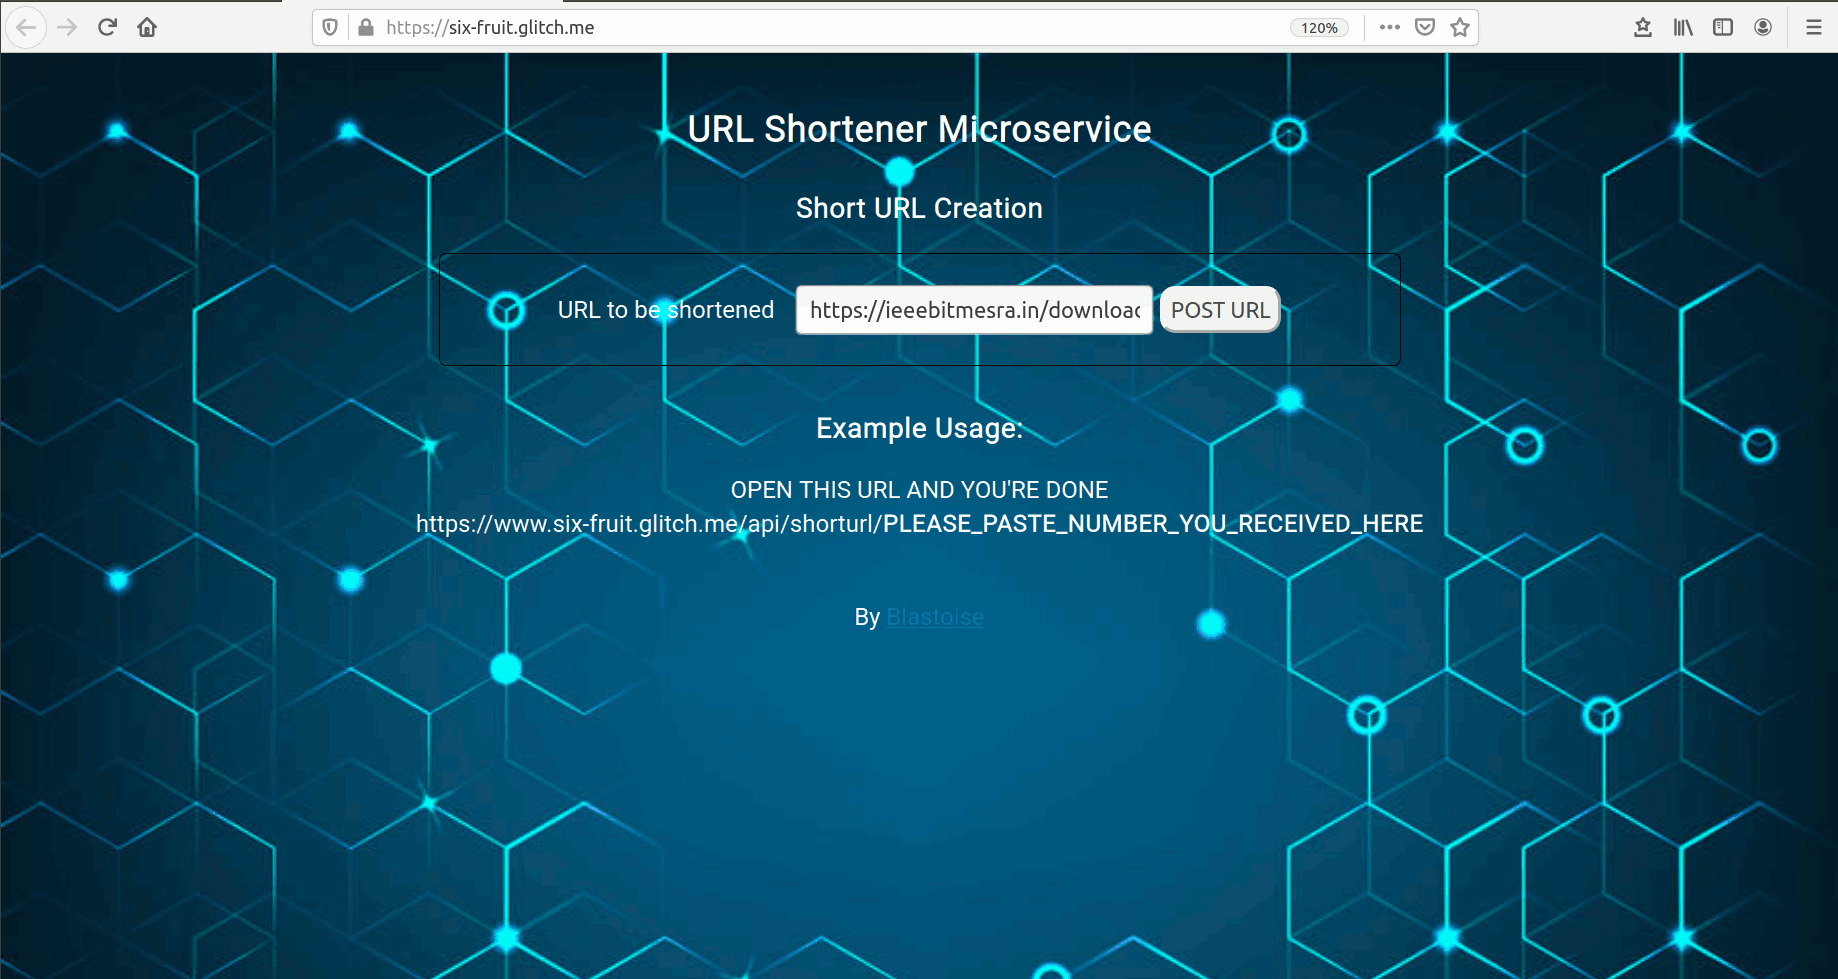 url shortner demo image